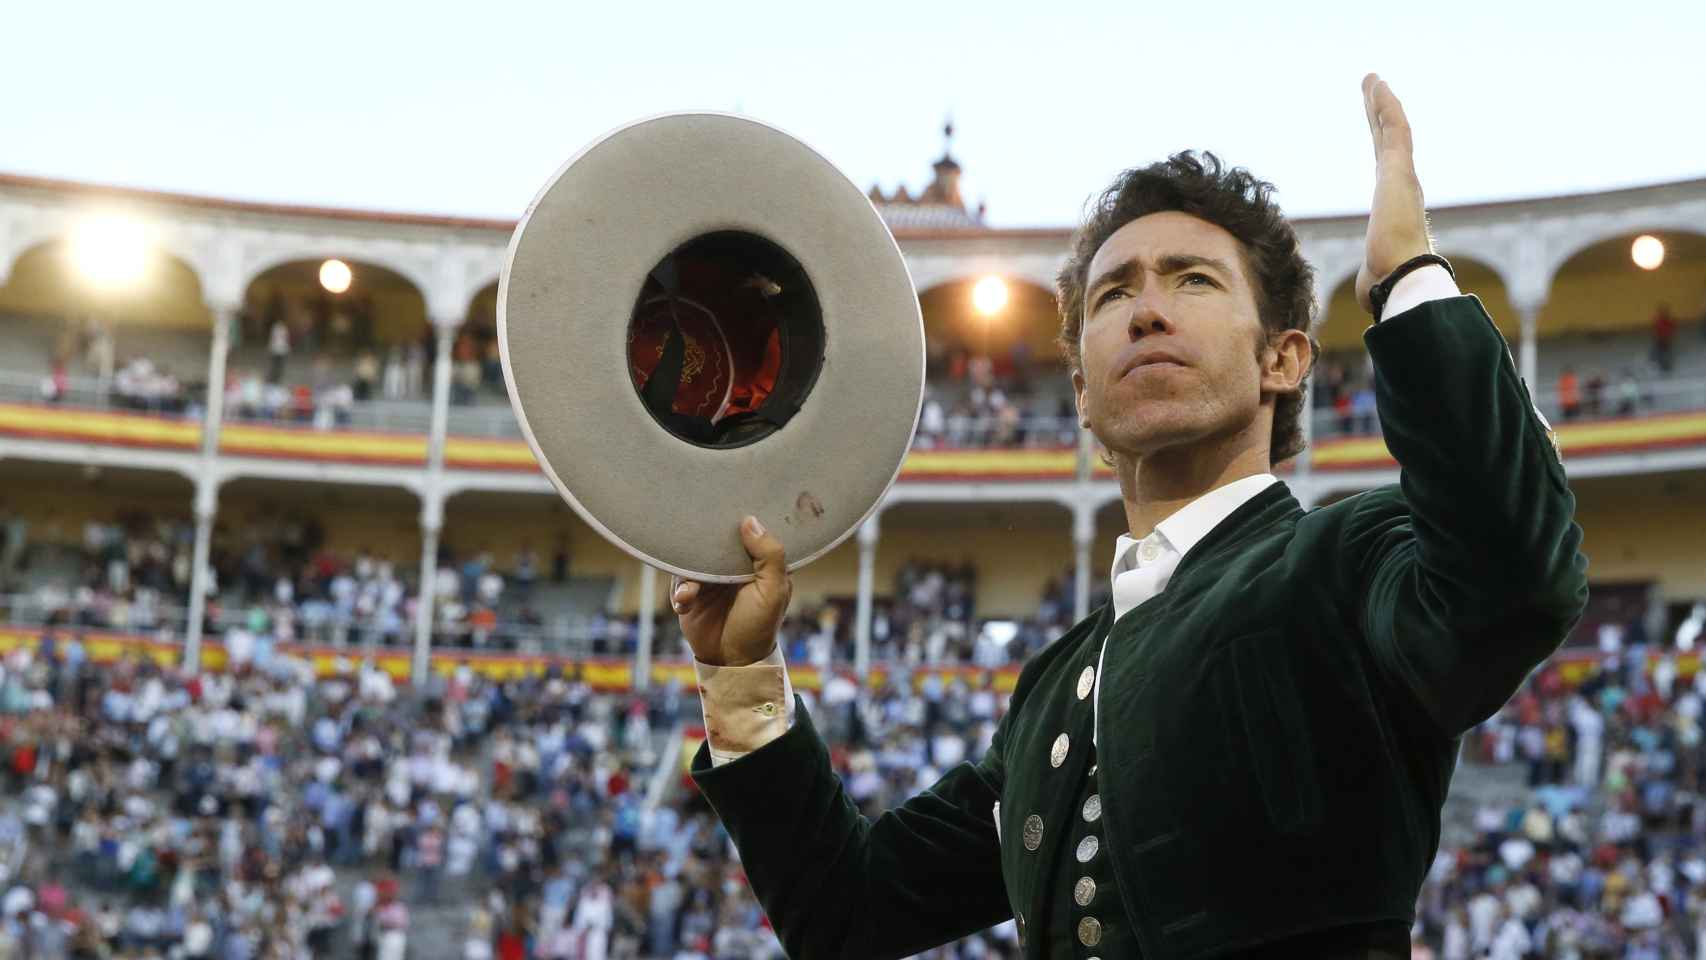 El rejoneador Leonardo Hernández a su salida a hombros de la monumental de Las Ventas.